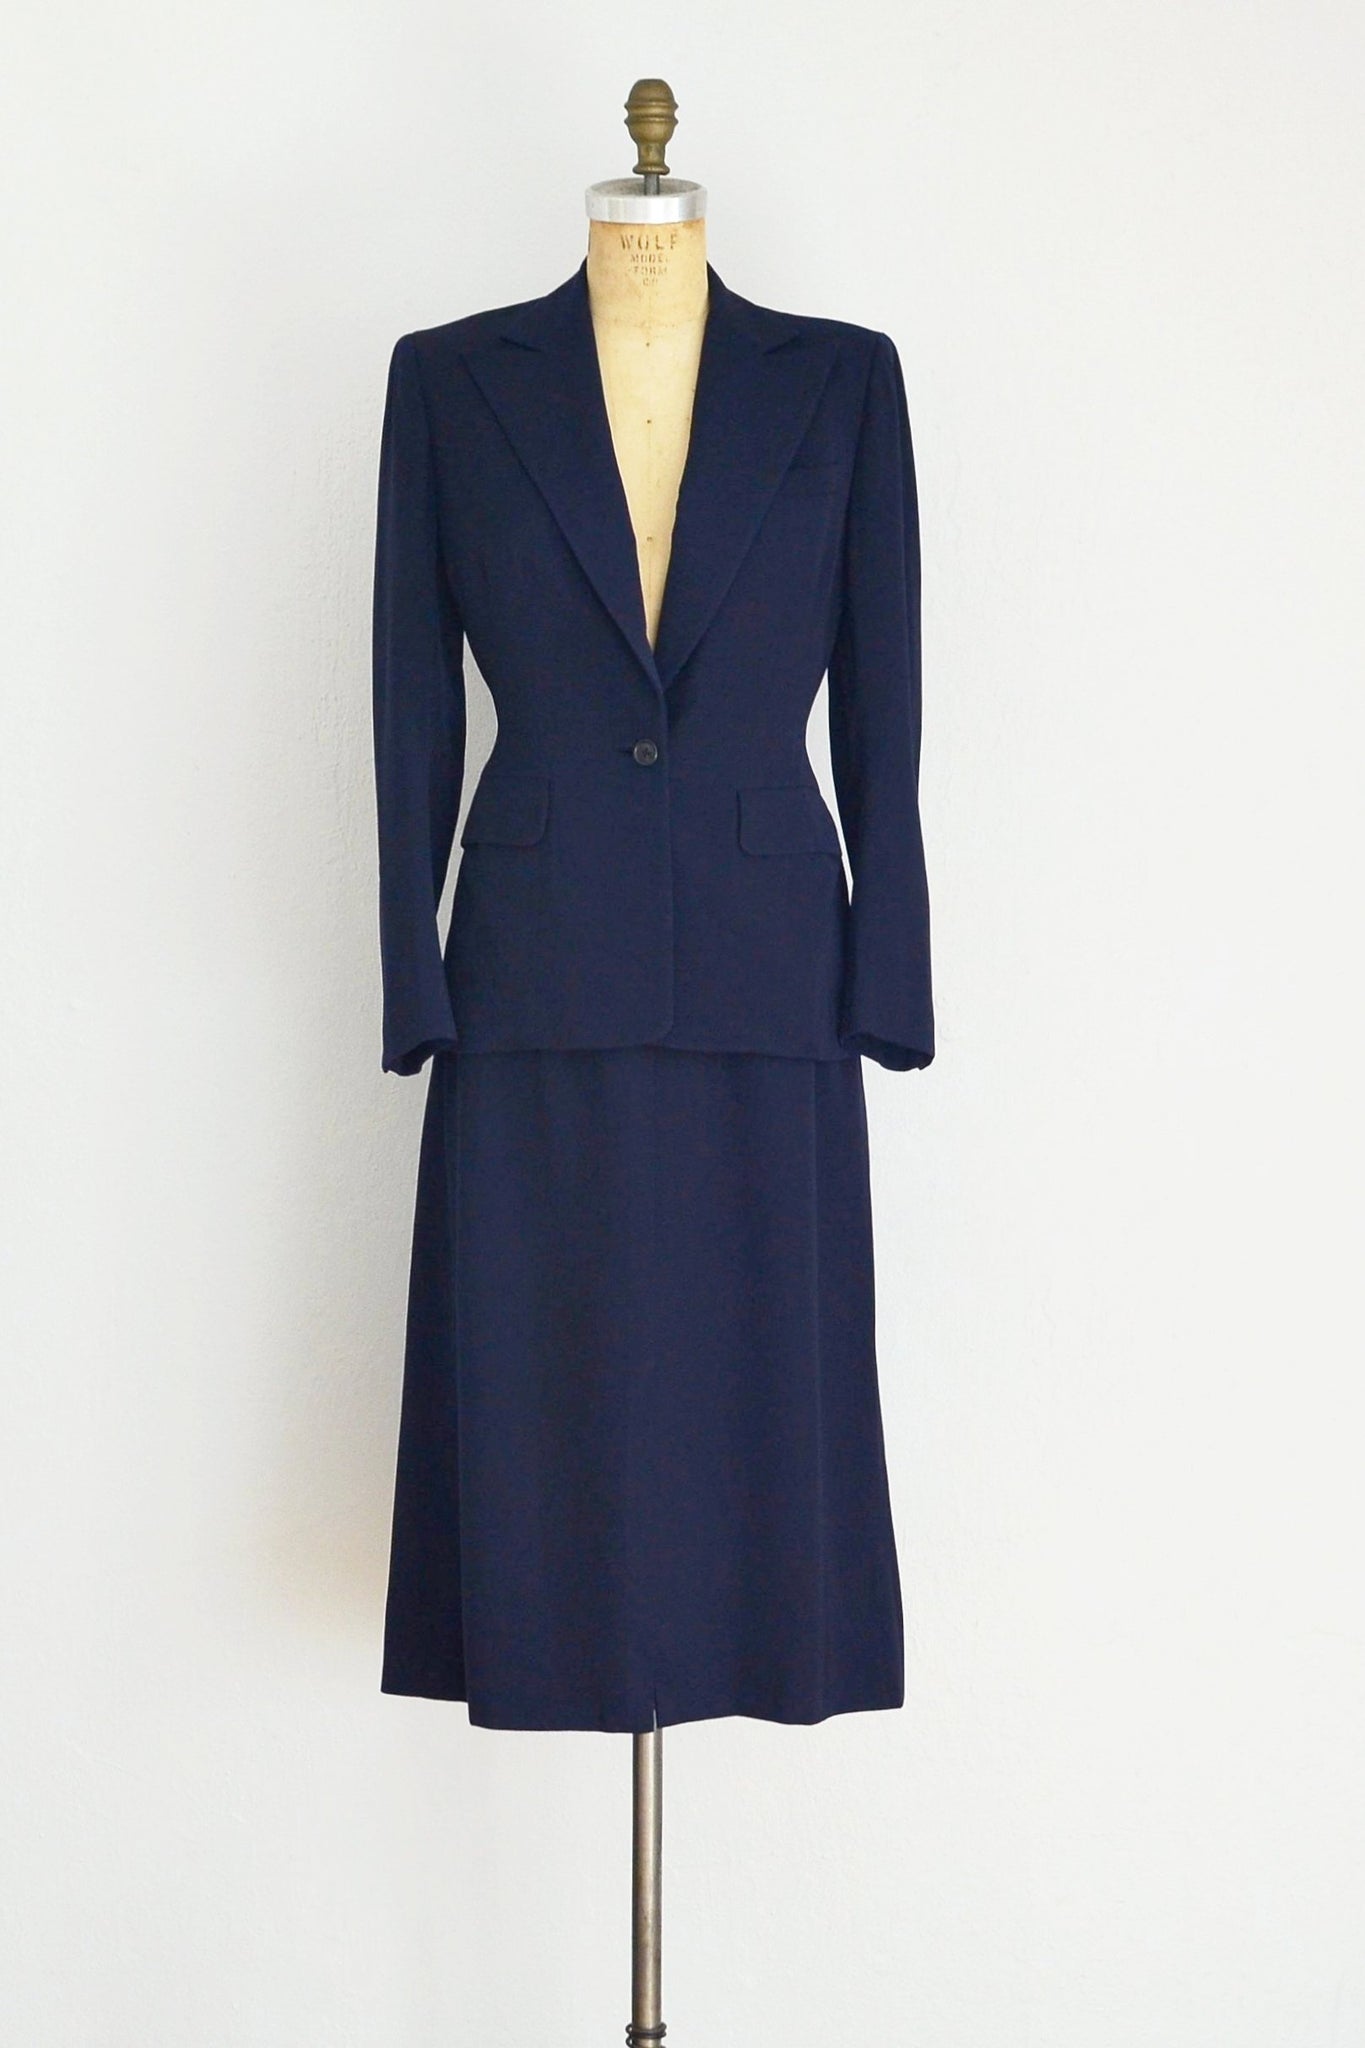 40s Navy Blue Suit - Pickled Vintage